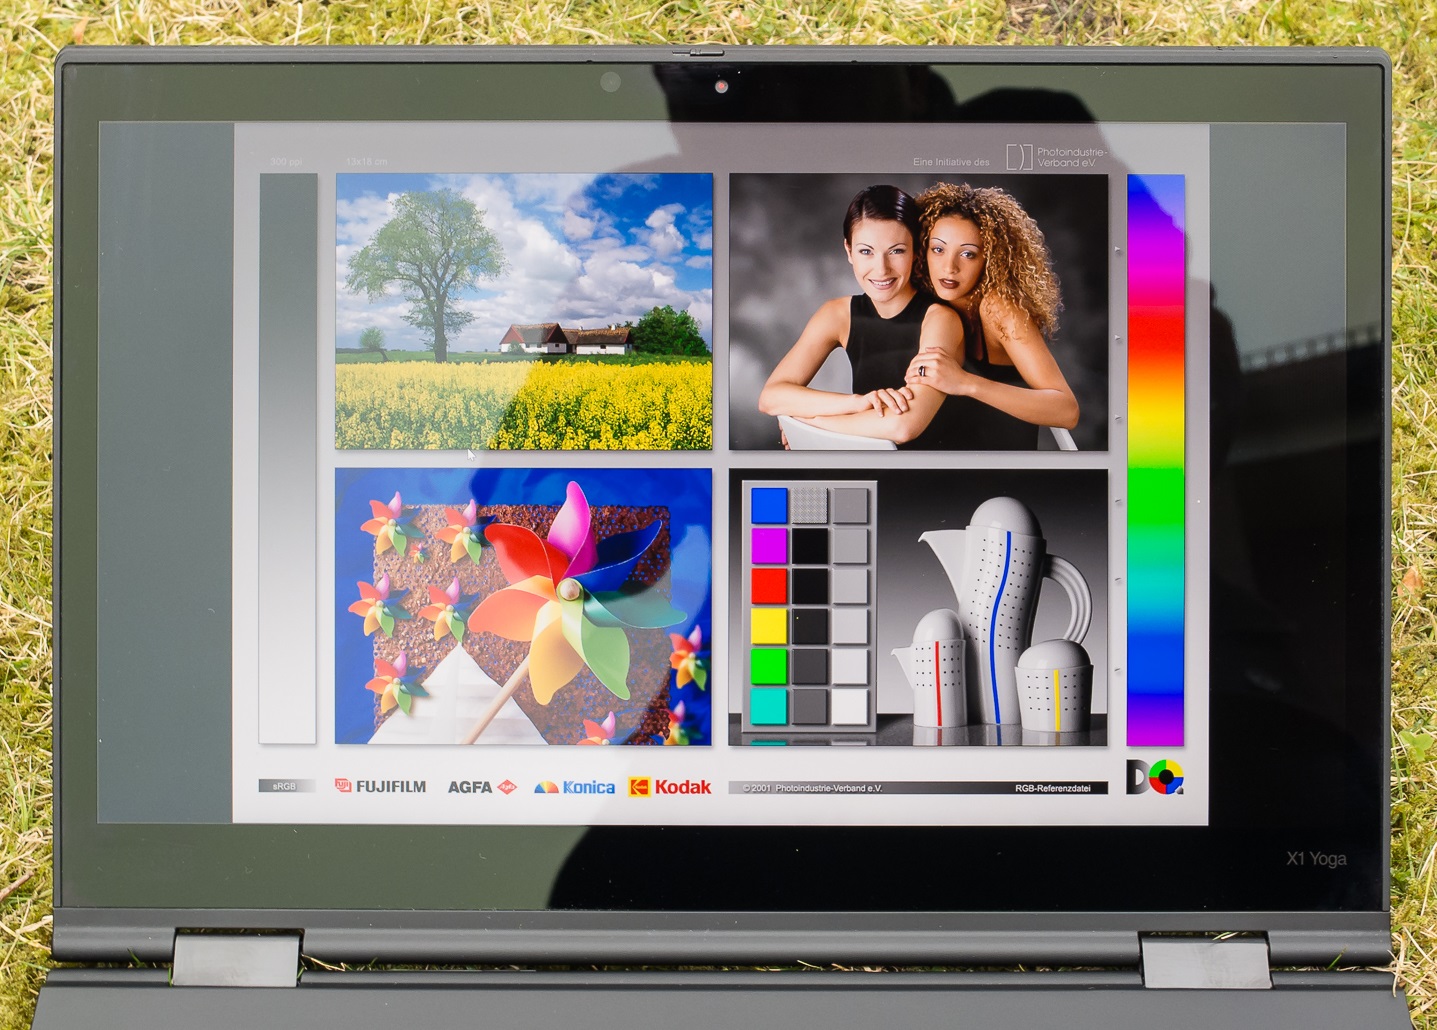 Đánh giá Thinkpad X1 Yoga Gen 3: Laptop 2 trong 1 bền, màn hình đẹp, Chuyên trang tư vấn về laptop